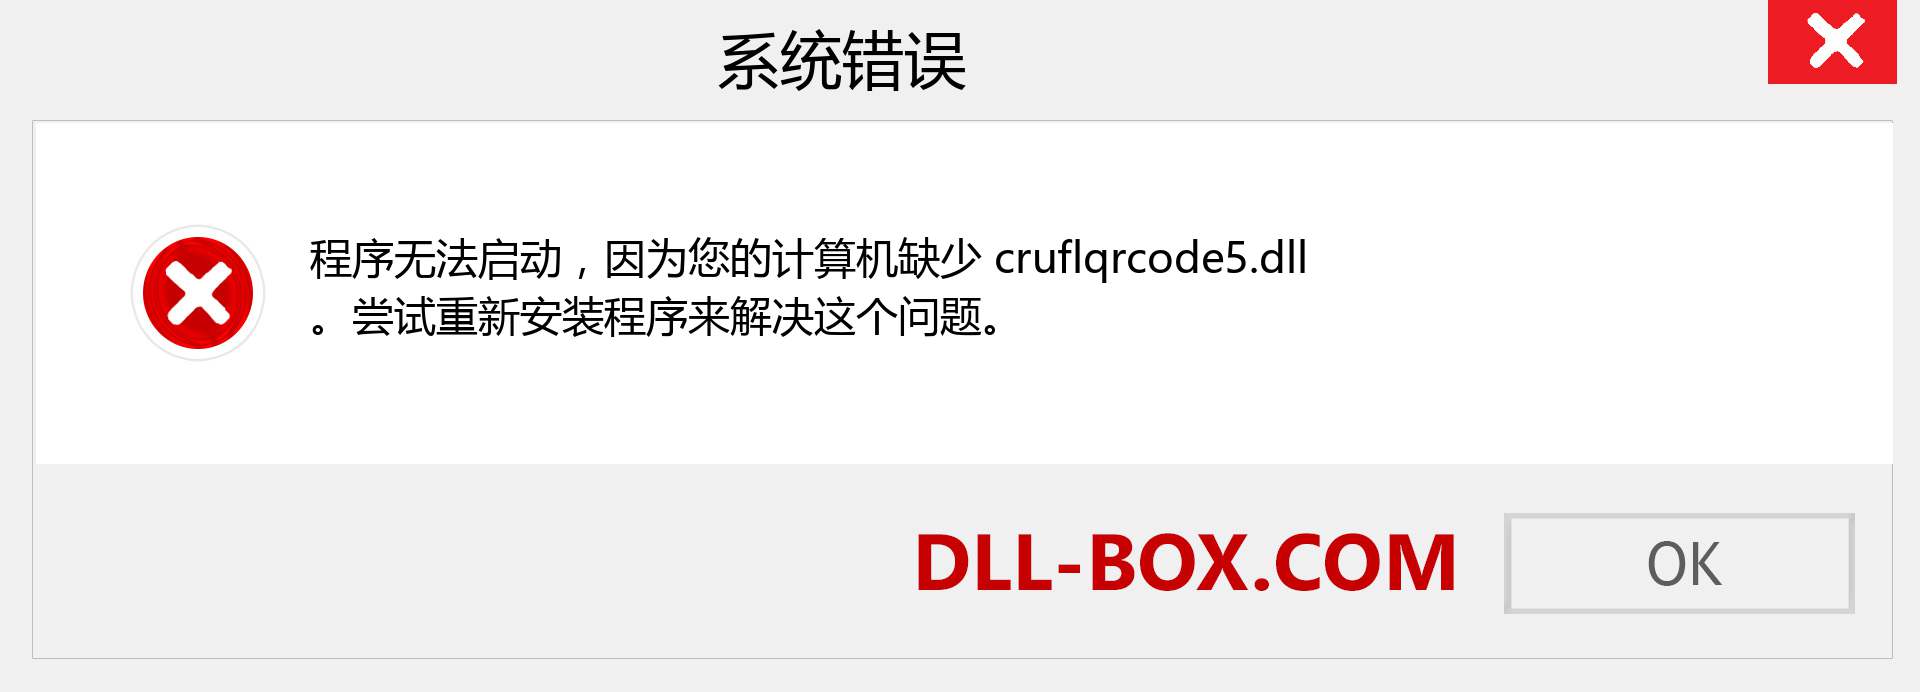 cruflqrcode5.dll 文件丢失？。 适用于 Windows 7、8、10 的下载 - 修复 Windows、照片、图像上的 cruflqrcode5 dll 丢失错误